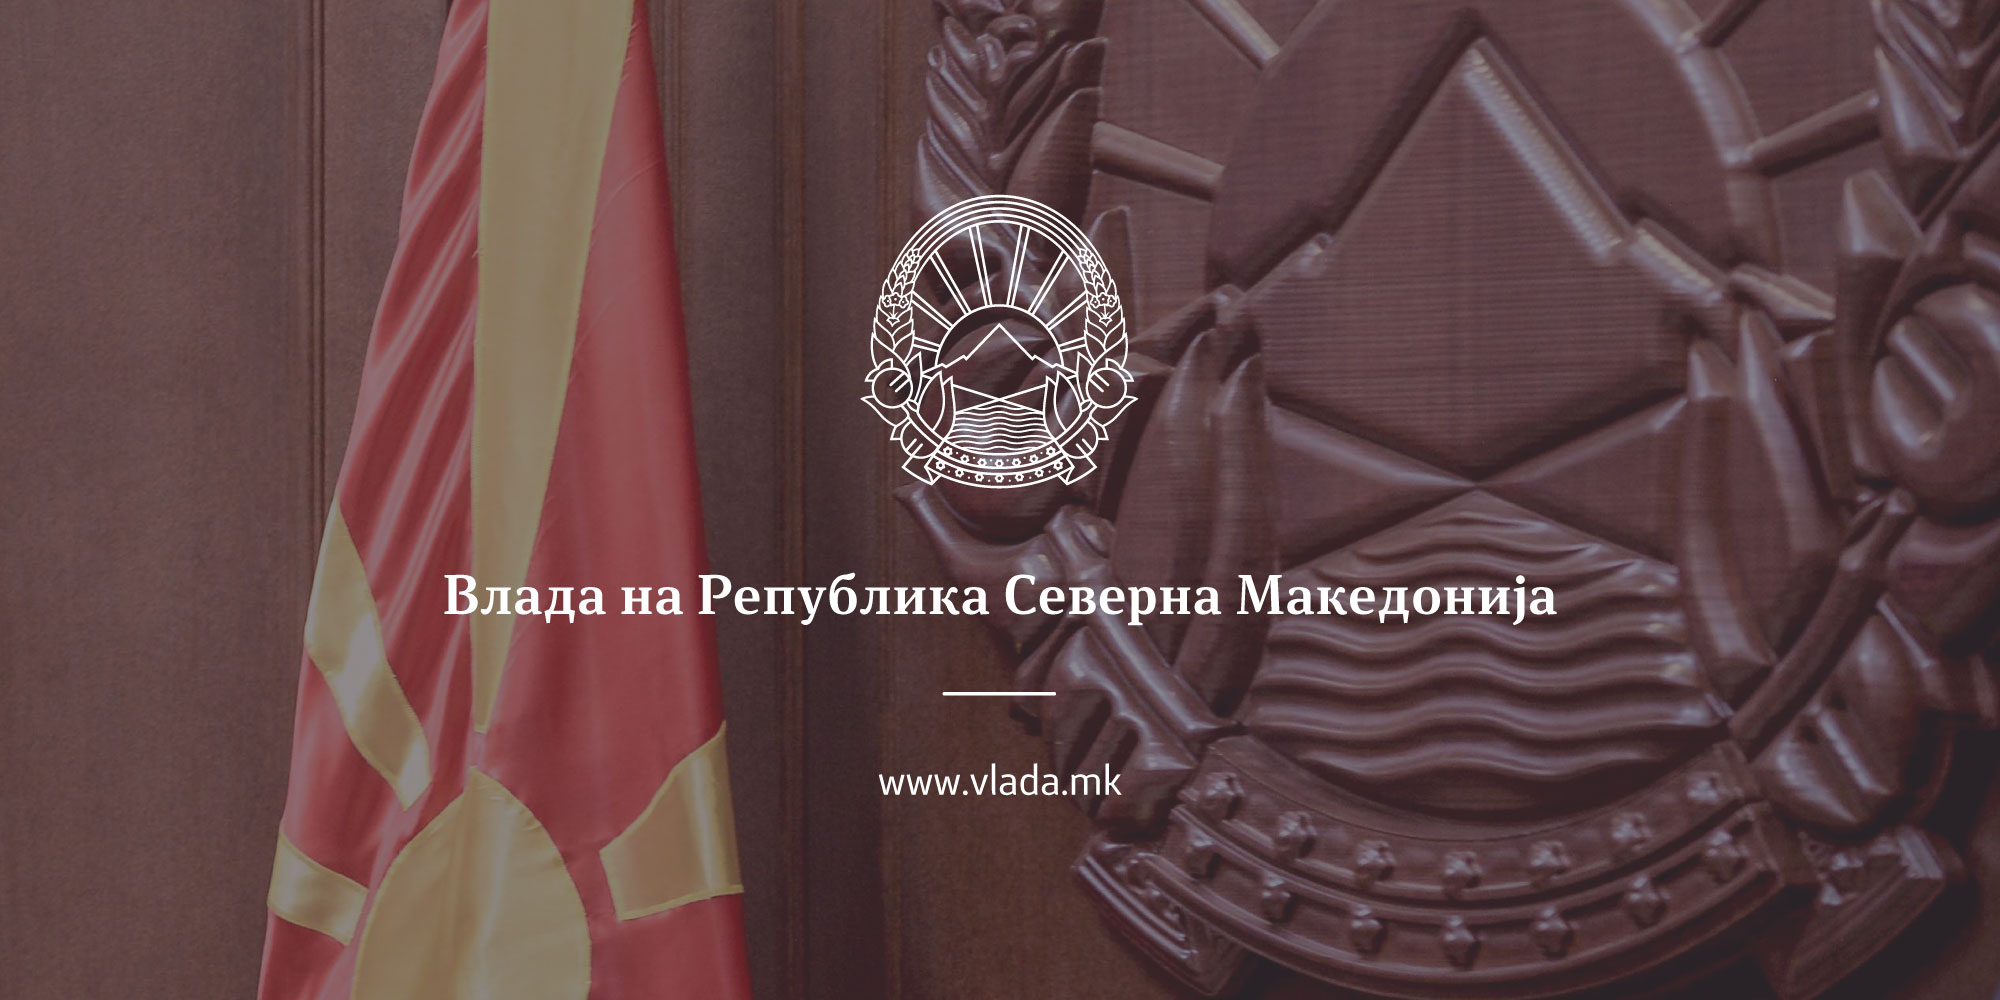 Владата донесе одлука да се поништи одлуката за прием на Онишченко во државјанство